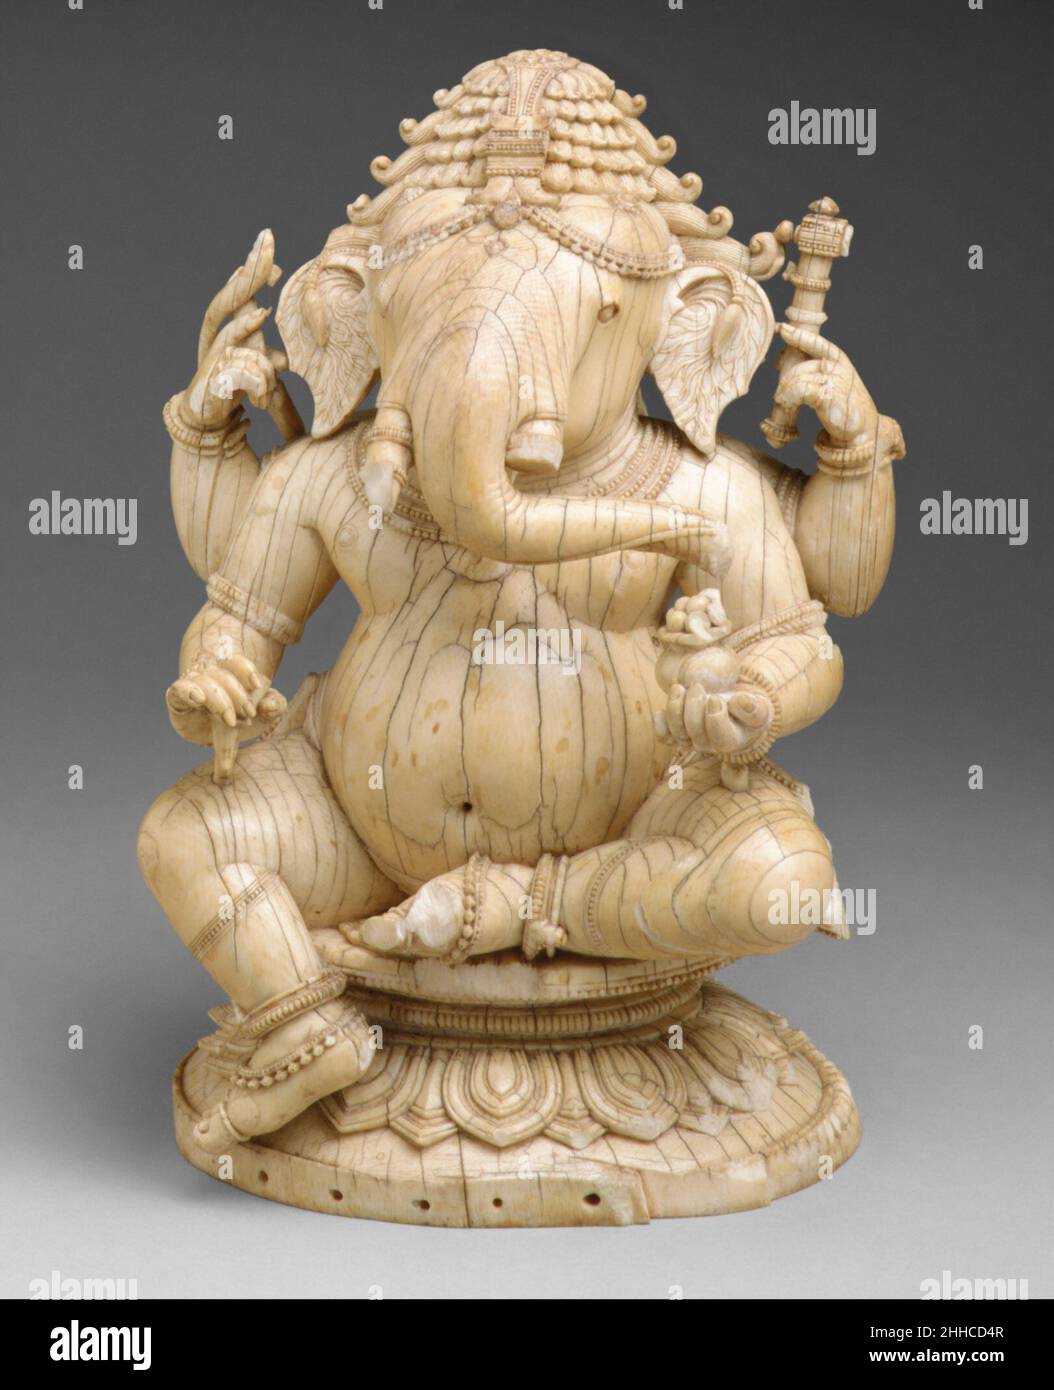 Seduto Ganesha 14th–15th secolo India (Orissa) il dio indù di auspiciousness, Ganesha, è popolarmente accettato come il primo figlio di Shiva e Parvati. Come divinità che controlla gli ostacoli, la loro invenzione e la loro rimozione, egli è adorato prima di qualsiasi impresa seria. Questo Ganesha seduto a quattro armi tiene uno dei suoi zoccoli, due serpenti intrecciati, una capra elefante e una scatola di dolci. Ascolta gli esperti che illuminano la storia di questa opera d'arte Ascolta Riproduci o pausa #7994. Seed Ganesha supportato da Bloomberg Philanthropies Siamo spiacenti, la trascrizione per questa traccia audio non è disponibile al momento. Noi Foto Stock